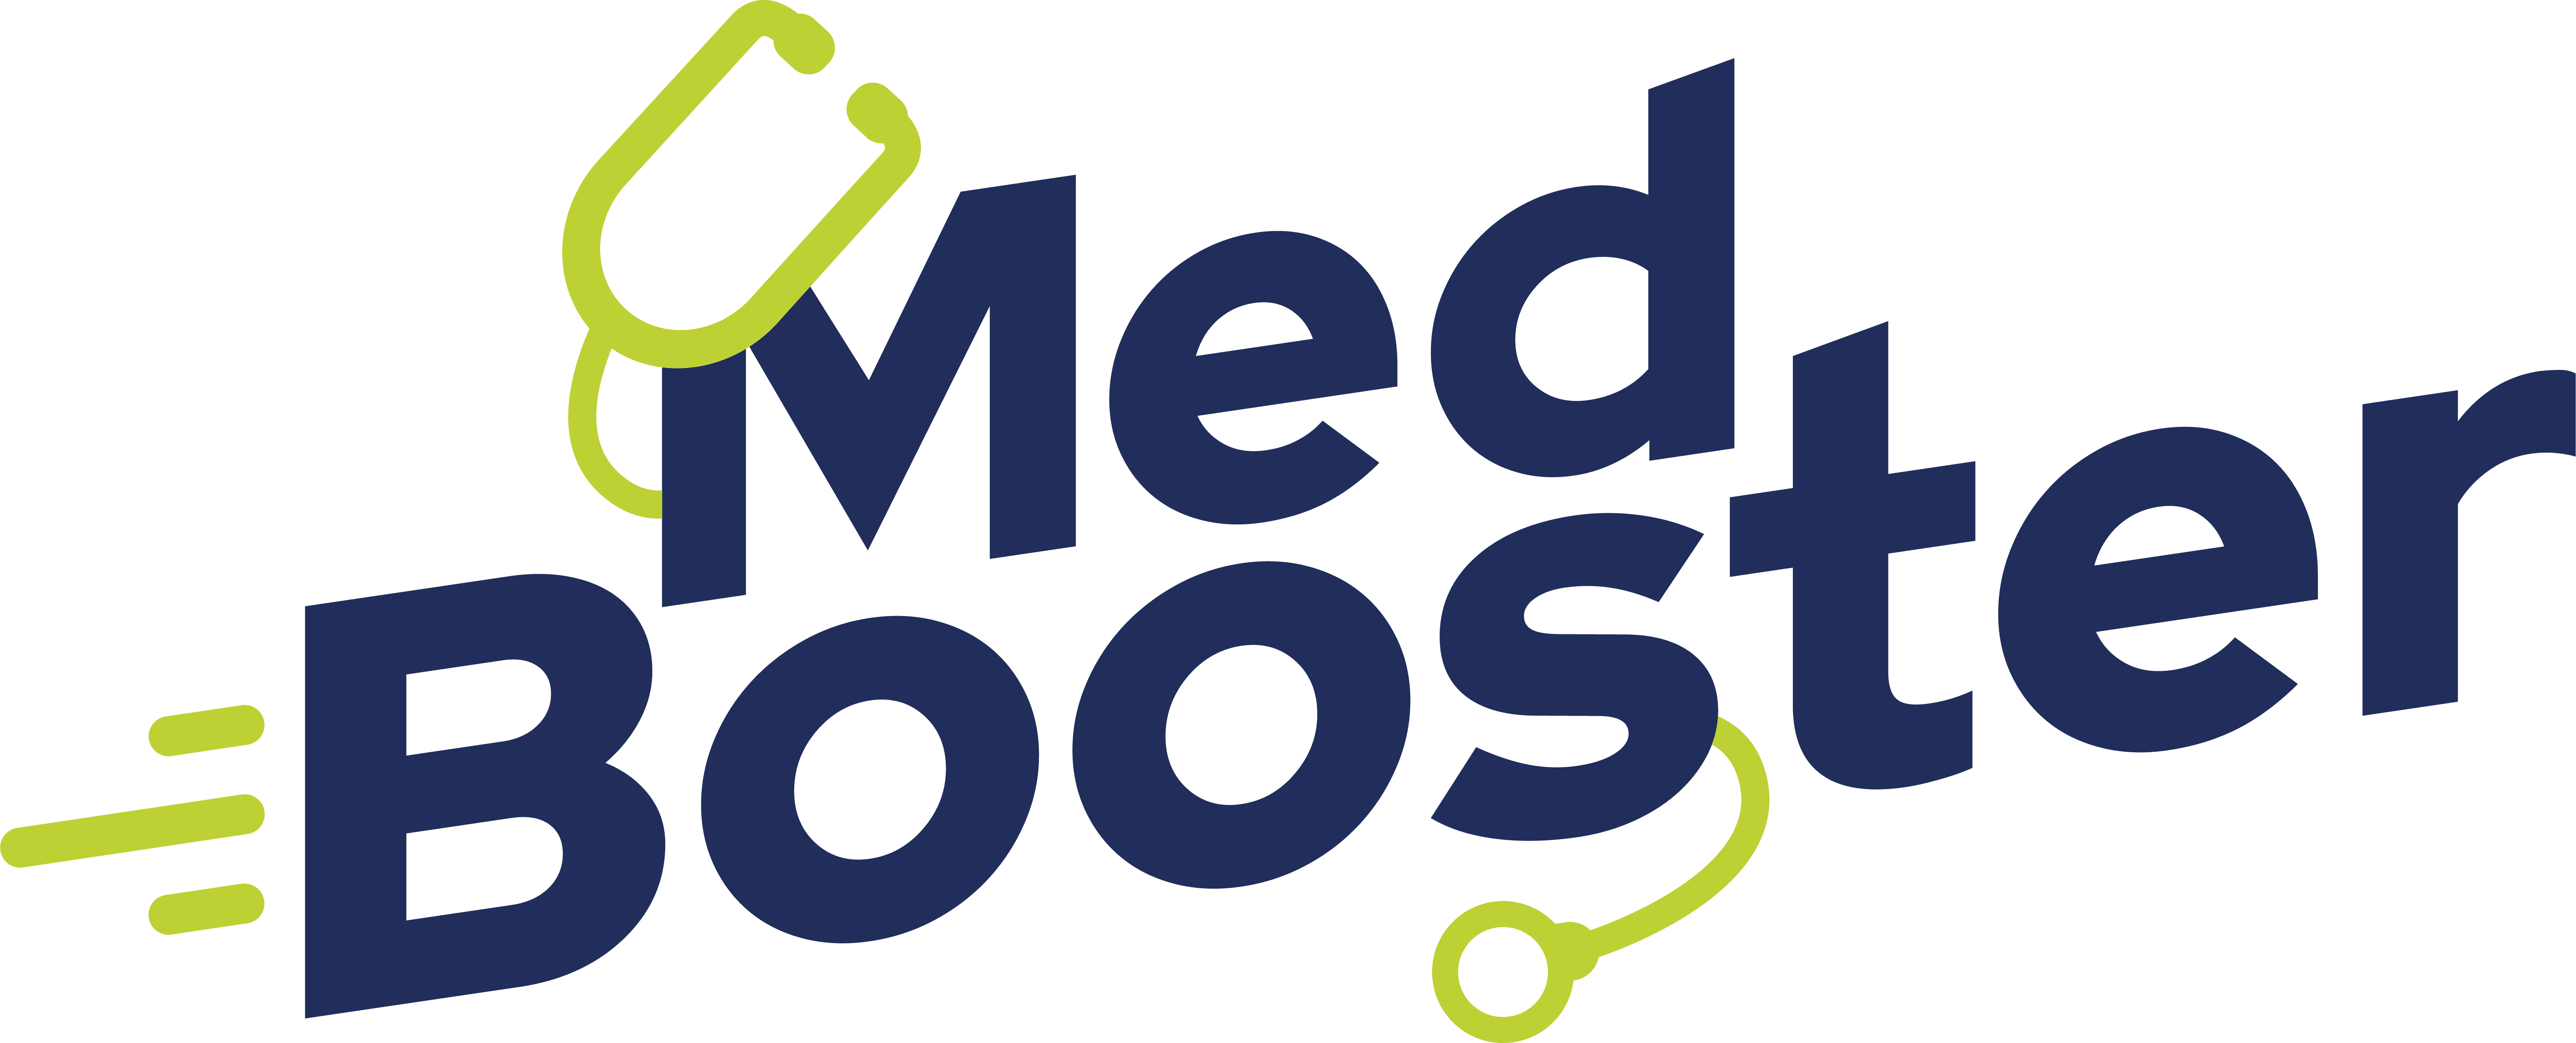 AMBOSS Partner Medbooster Logo